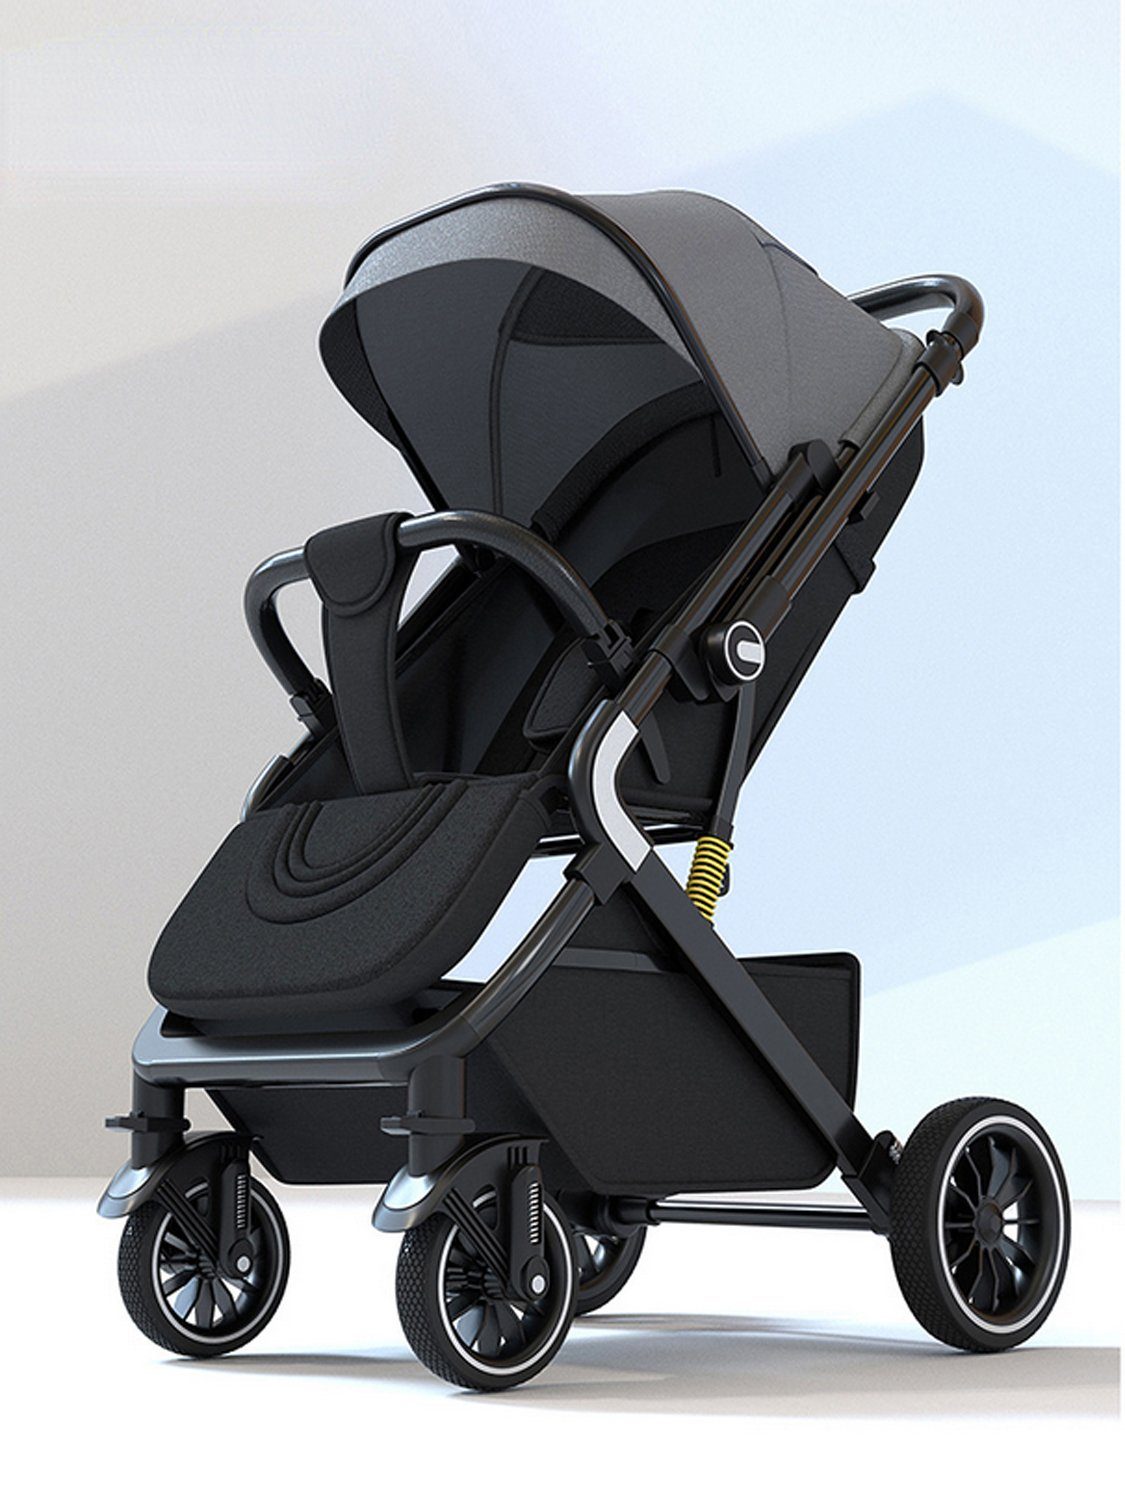 TPFLiving Kinder-Buggy Kinderwagen Buggy Babywanne 5-Punkt-Sicherheitsgurt mit Sonnenschutz, verstellbare Rückenlehne, wendbare Babyschale, Grau